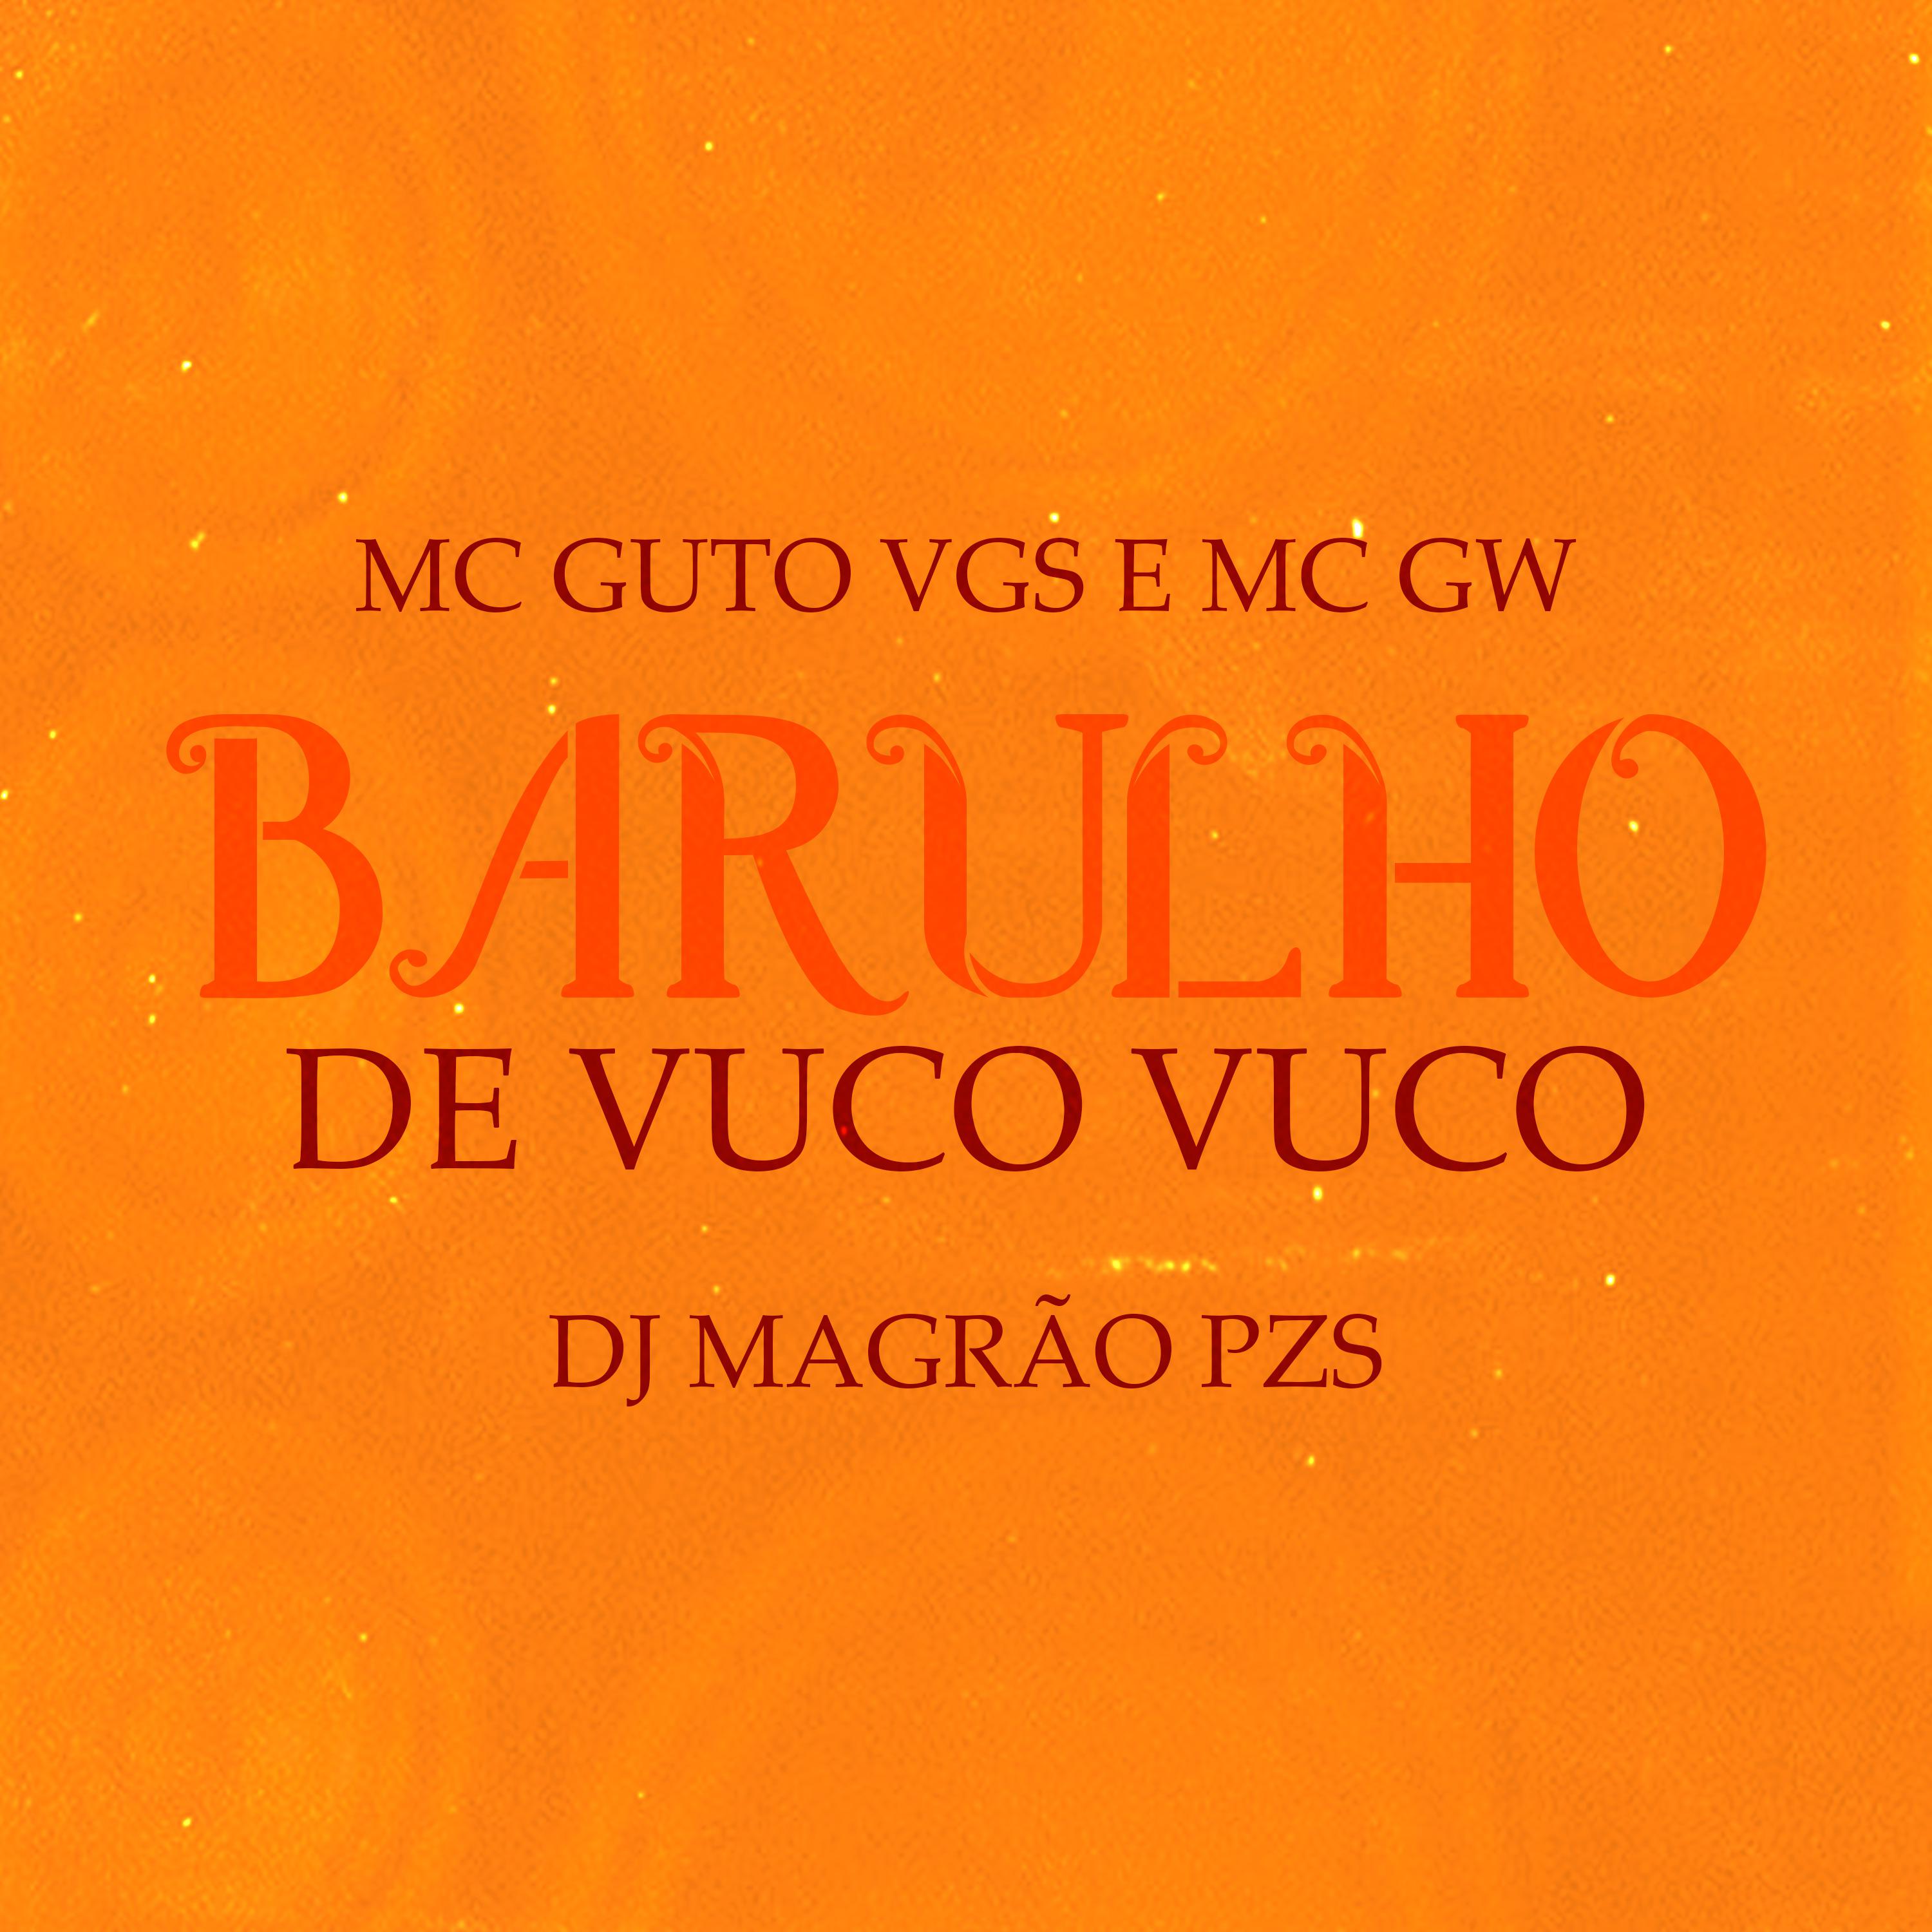 MC Guto VGS - Barulho de Vuco Vuco